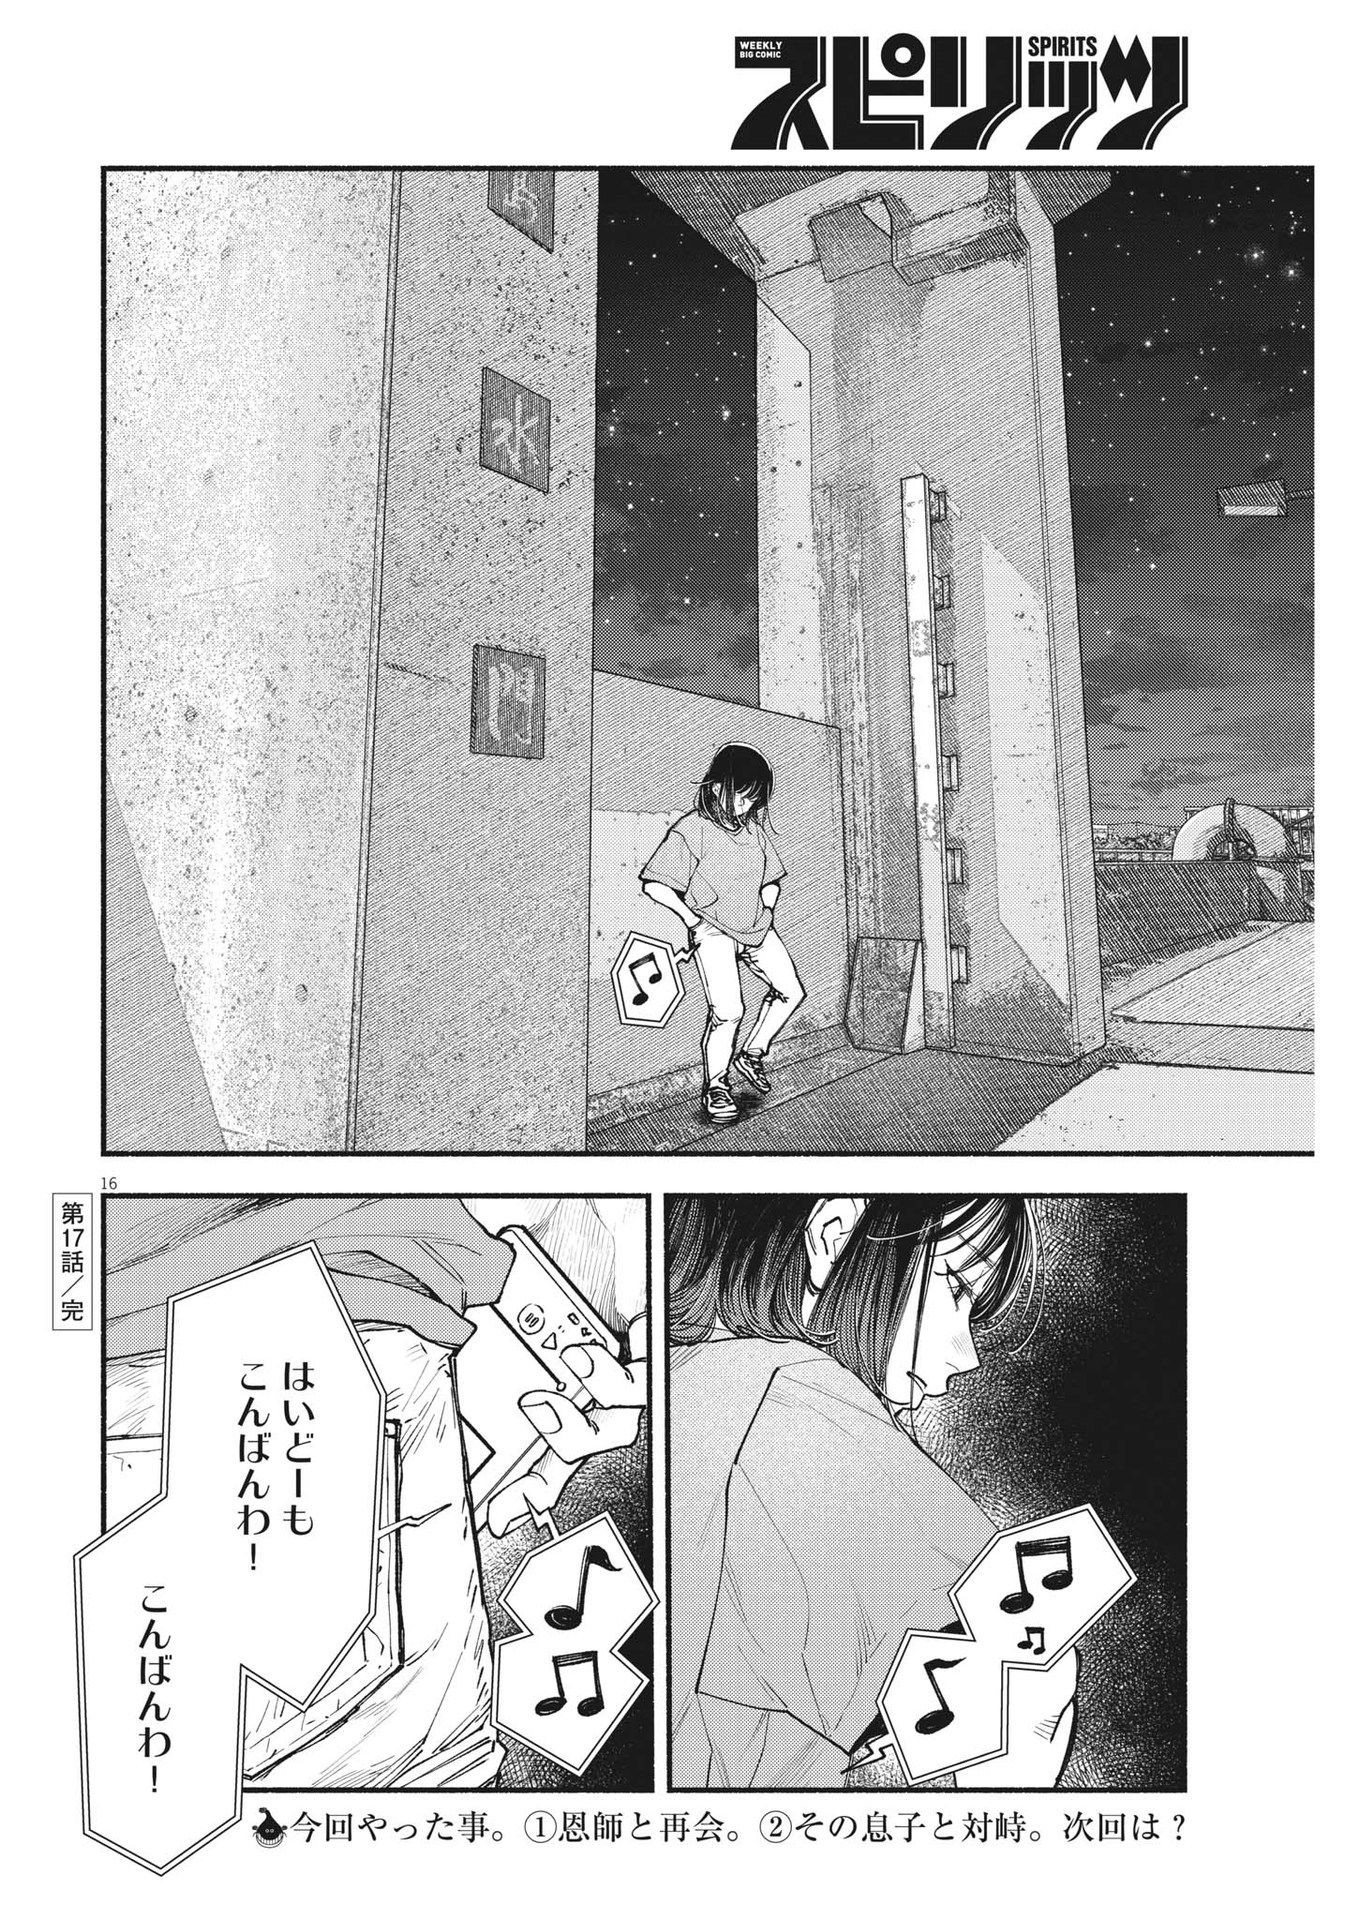 Konoyo wa Tatakau Kachi ga Aru  - Chapter 17 - Page 16